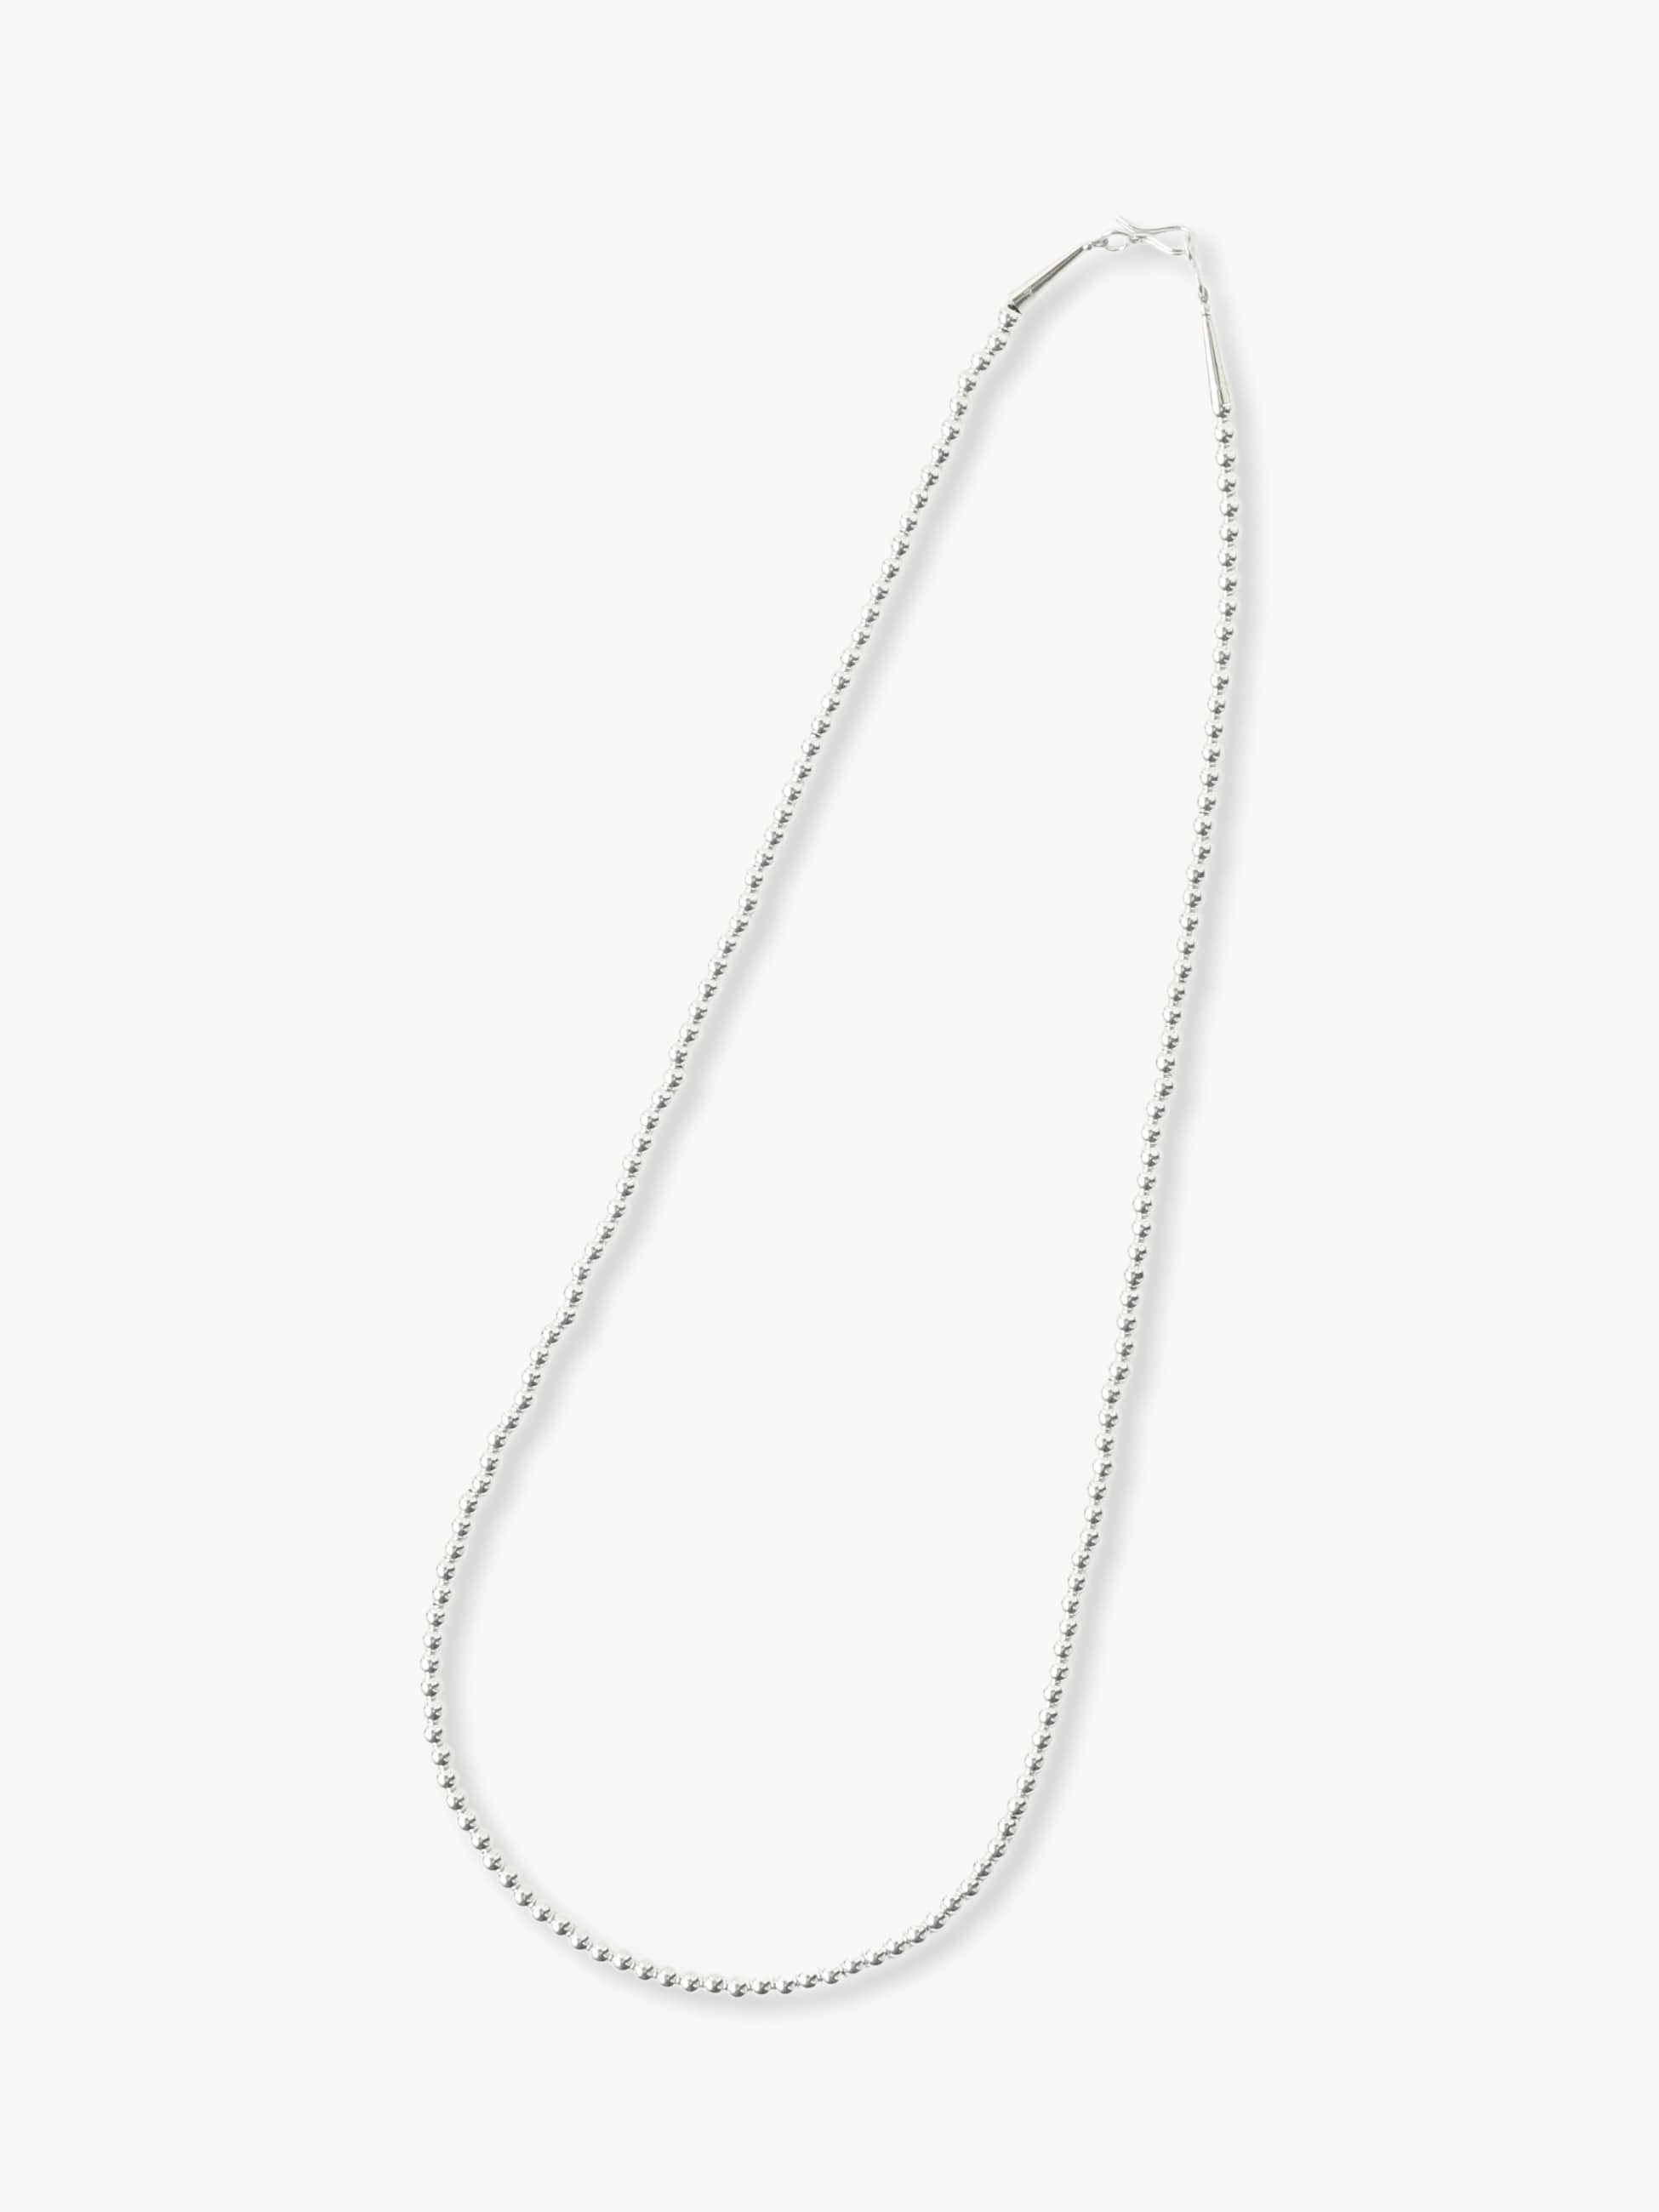 Boule Necklace (24/4mm) 詳細画像 silver 1